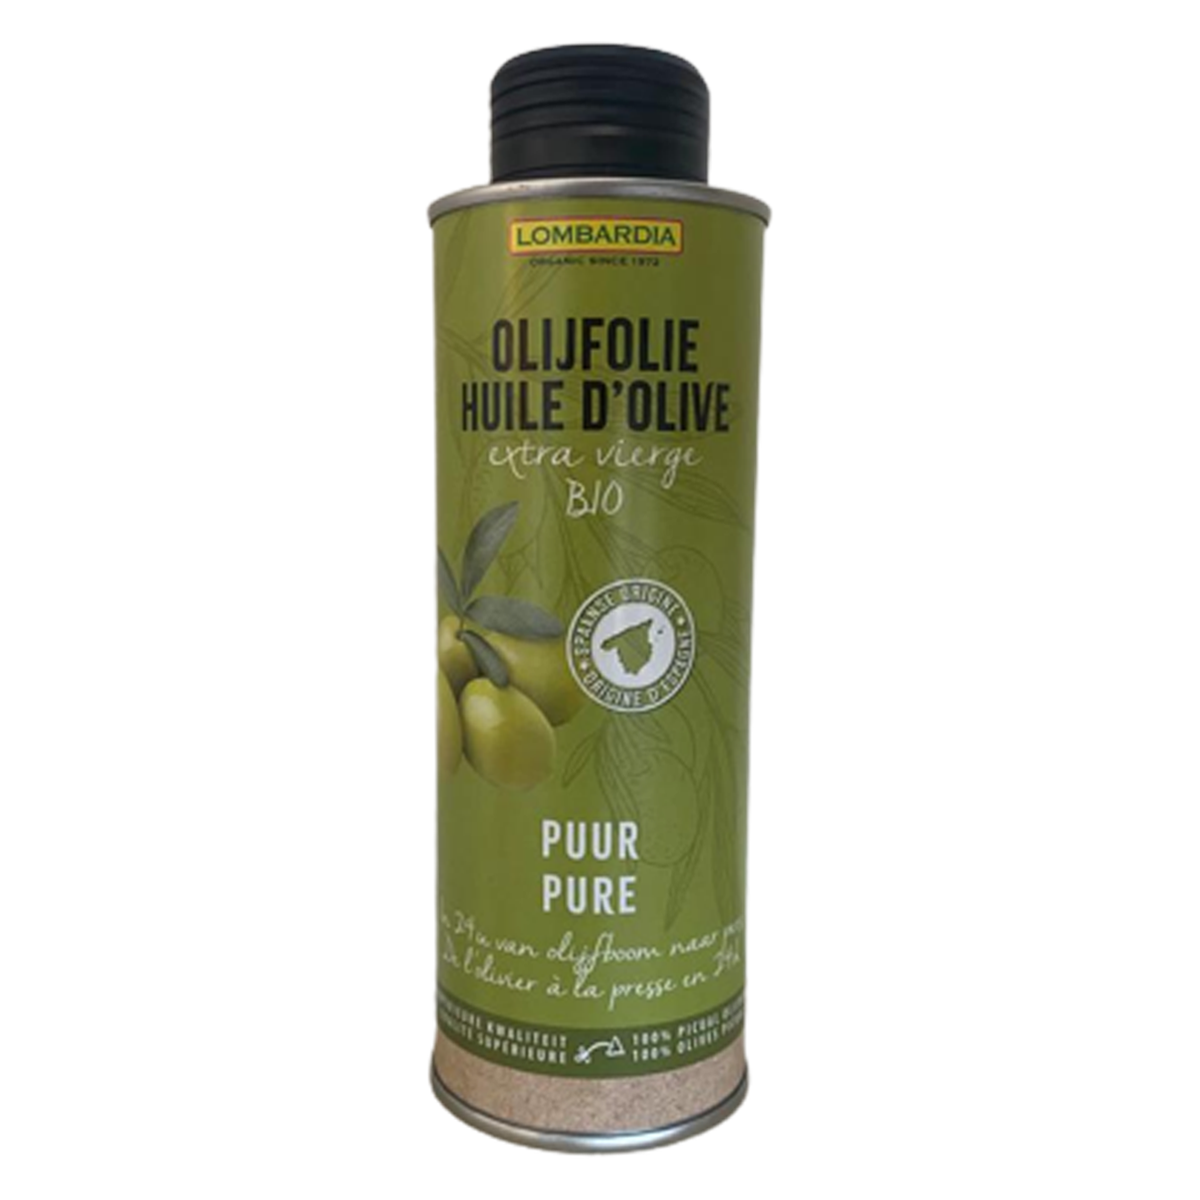 Bio extra vierge olijfolie 250ml | natuur